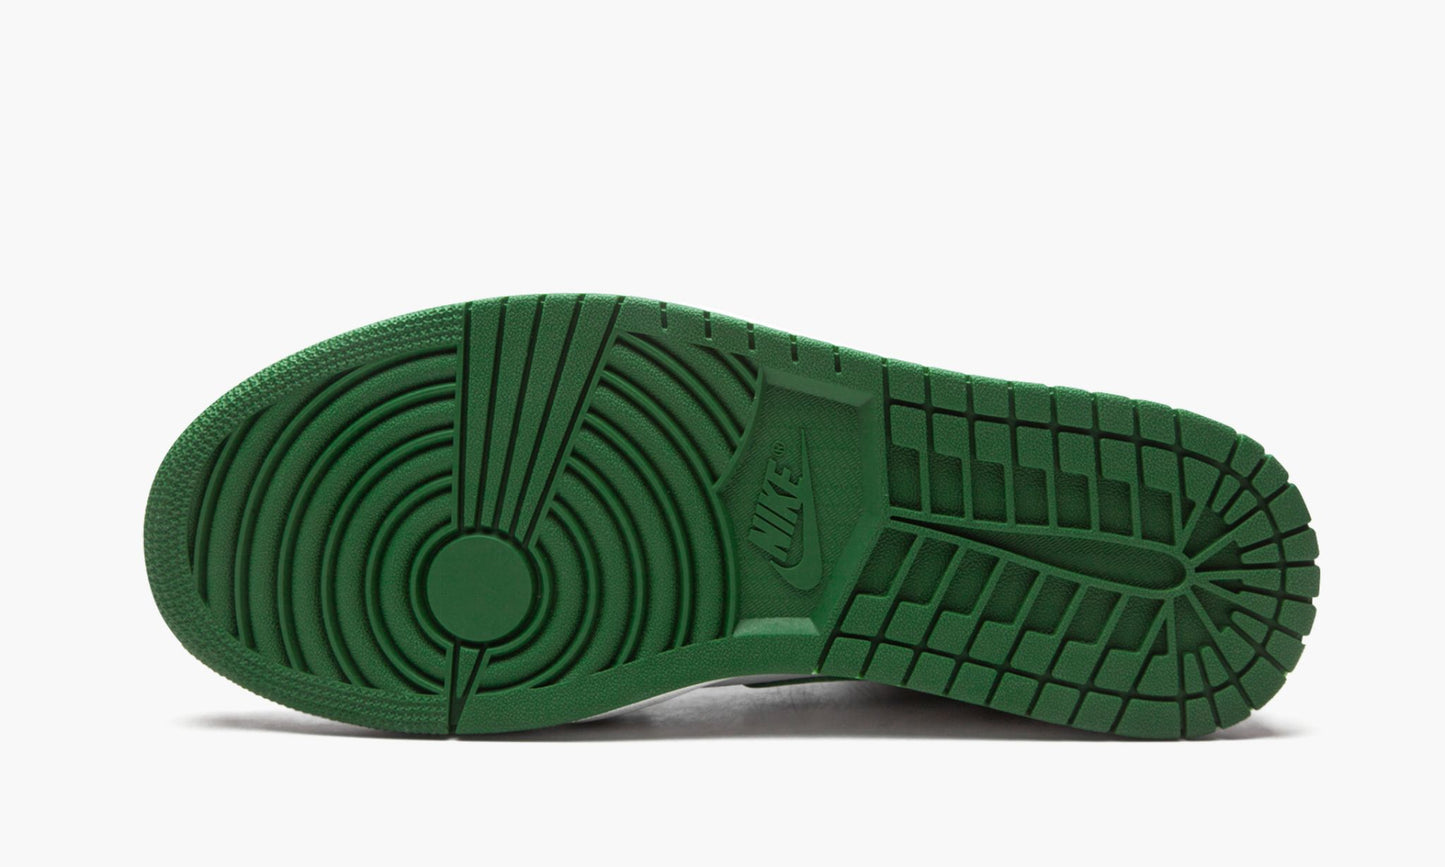 Air Jordan 1 Mid "Green Toe"